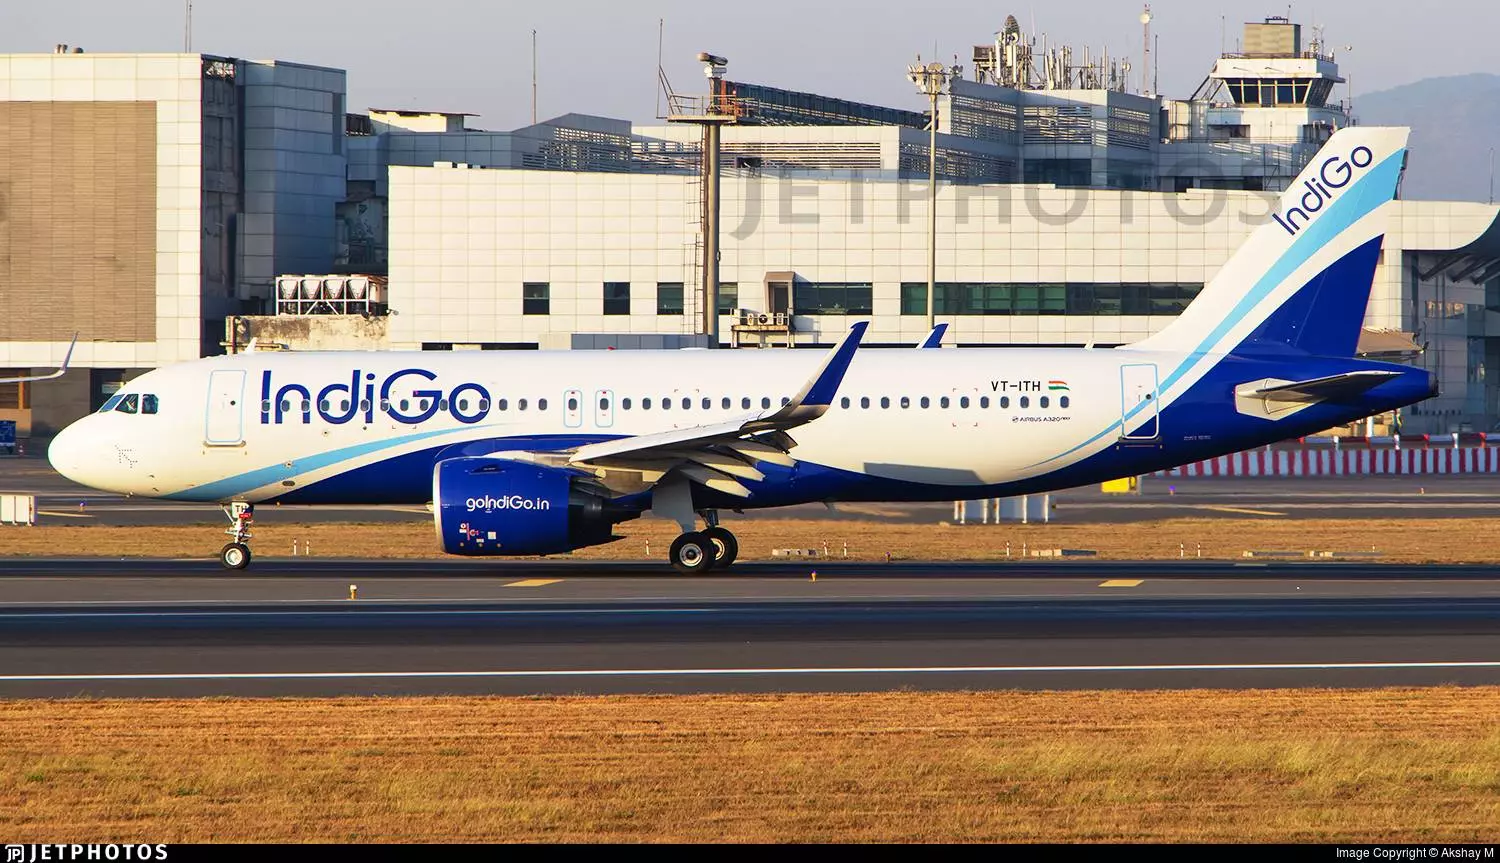 Авиакомпания indigo (индиго эйрлайнз) - расписание, билеты онлайн